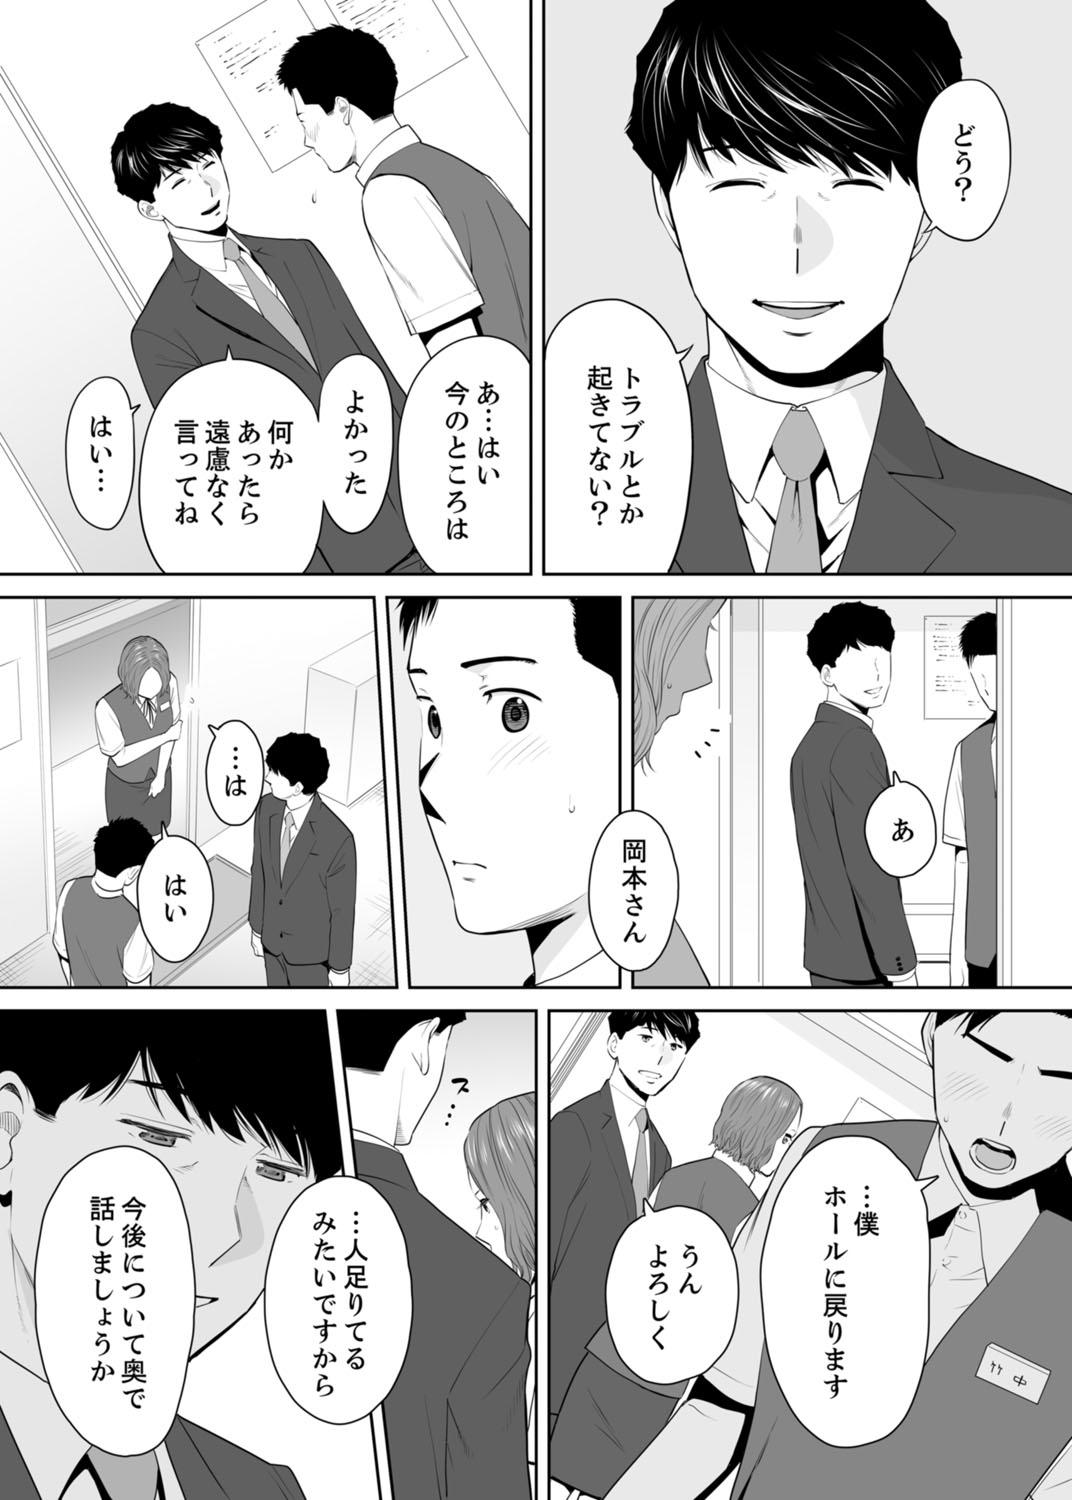 Bathroom "Otto no Buka ni Ikasarechau..." Aragaezu Kanjite Shimau Furinzuma 11 Barely 18 Porn - Page 6